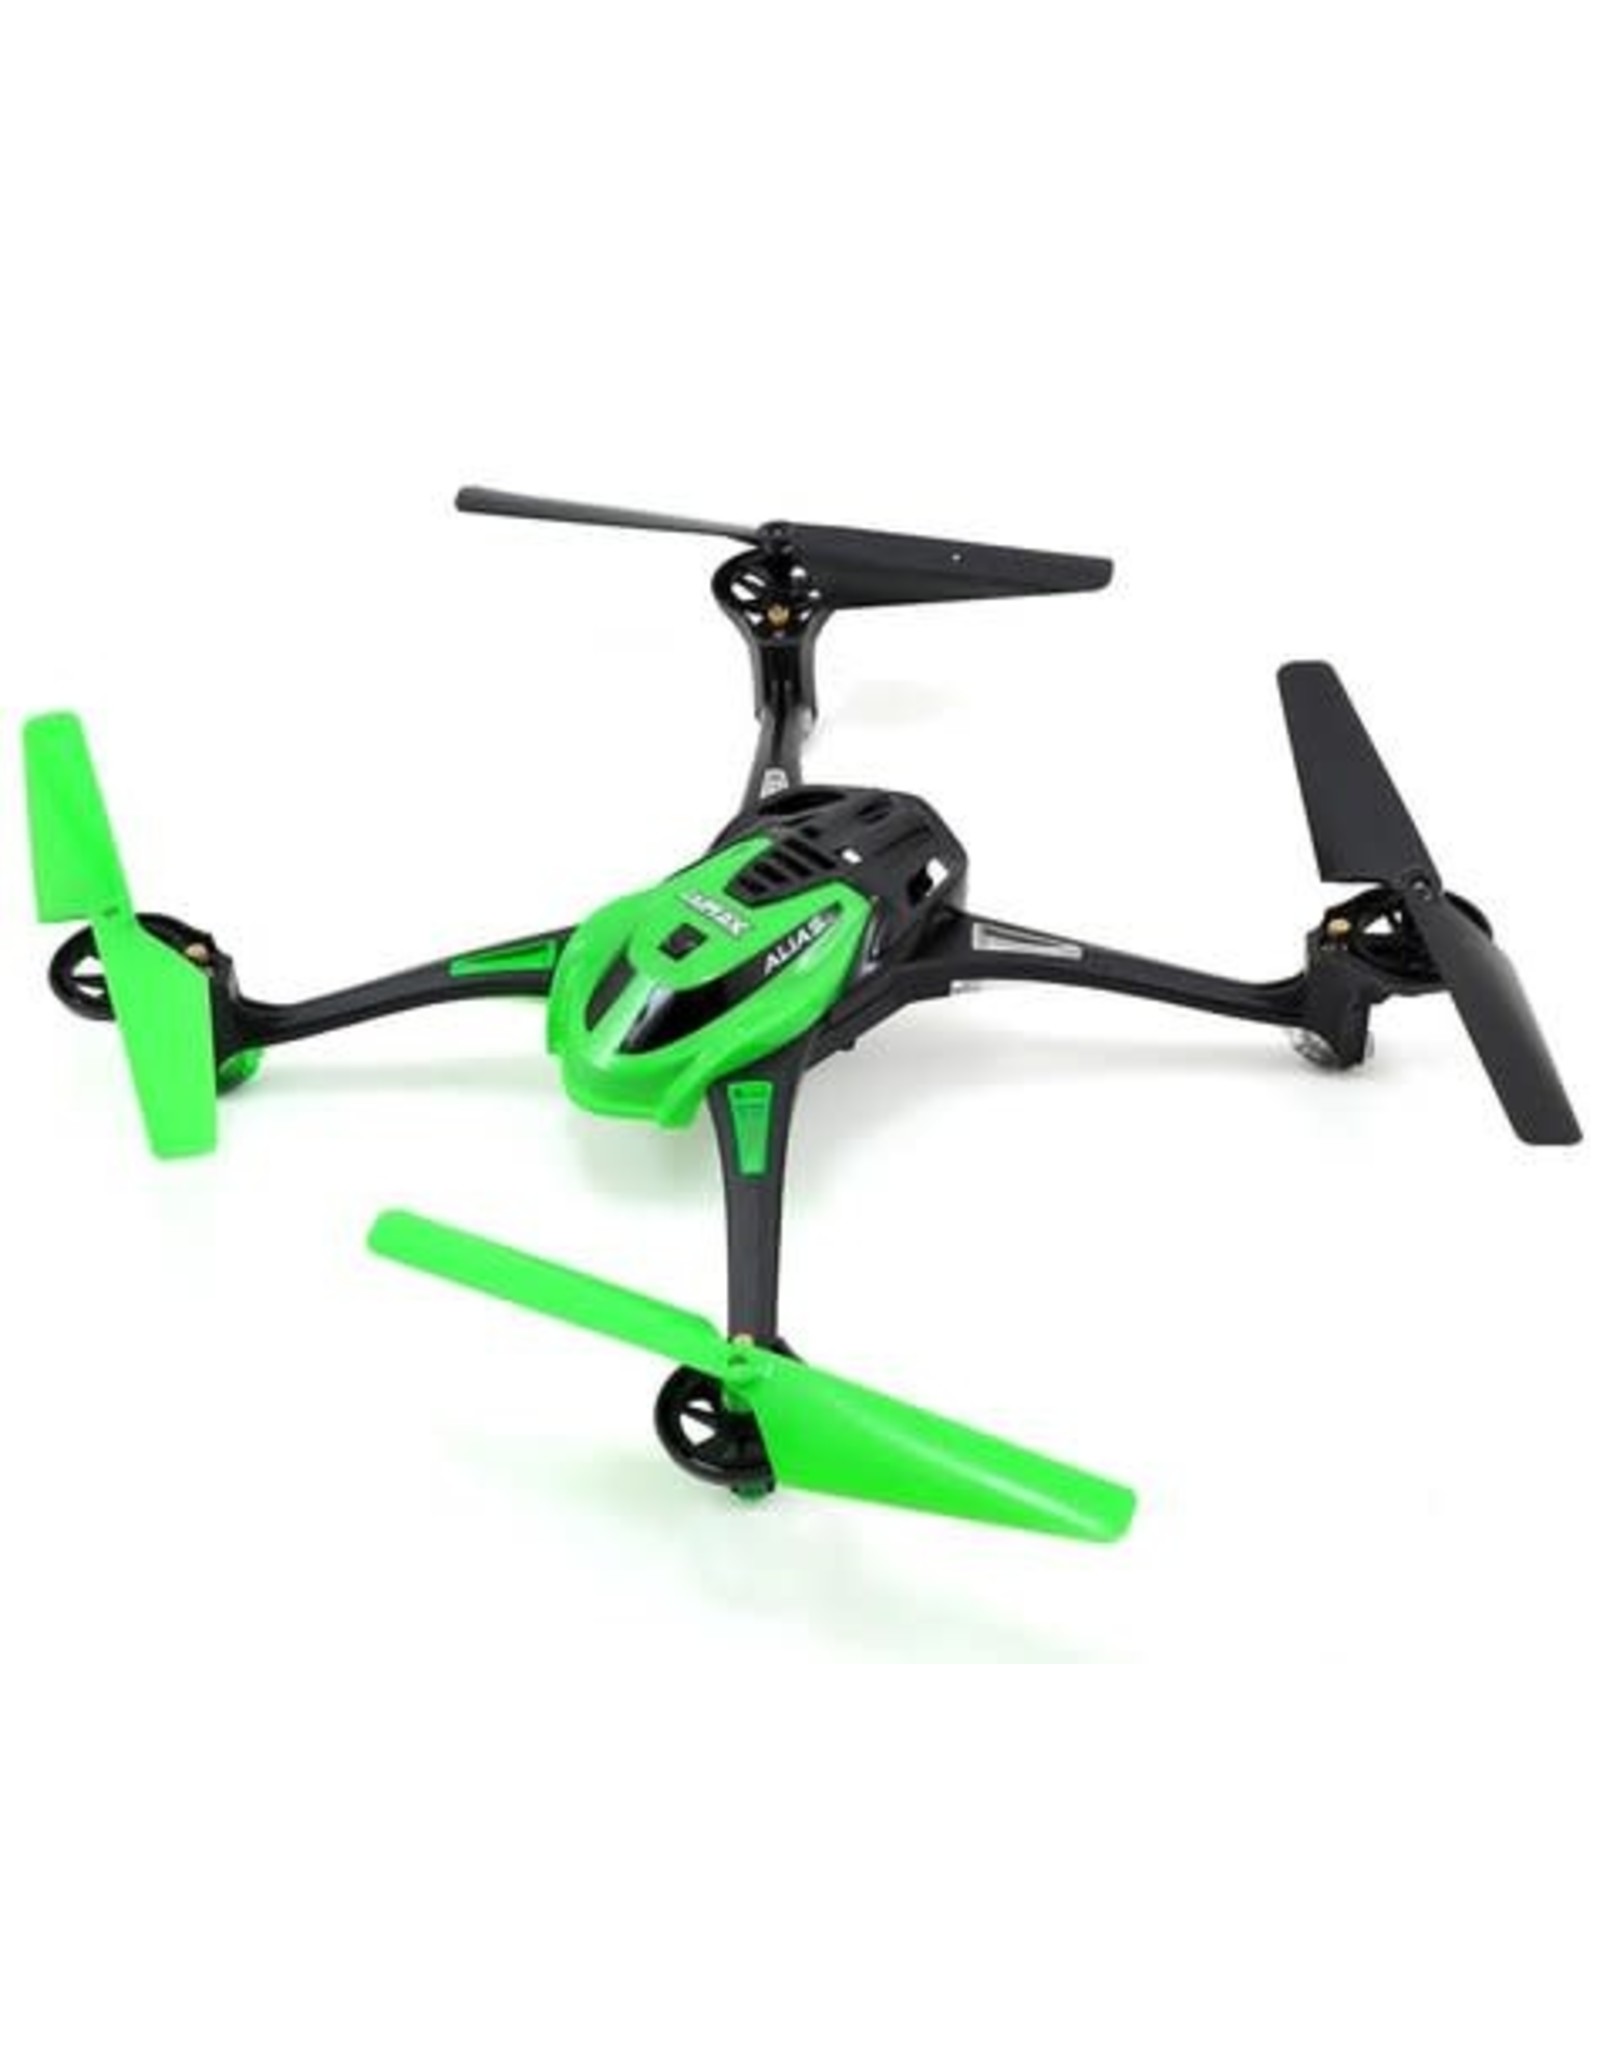 Traxxas Traxxas LaTrax Alias Ready-To-Fly Micro Electric Quadcopter Drone (Green)